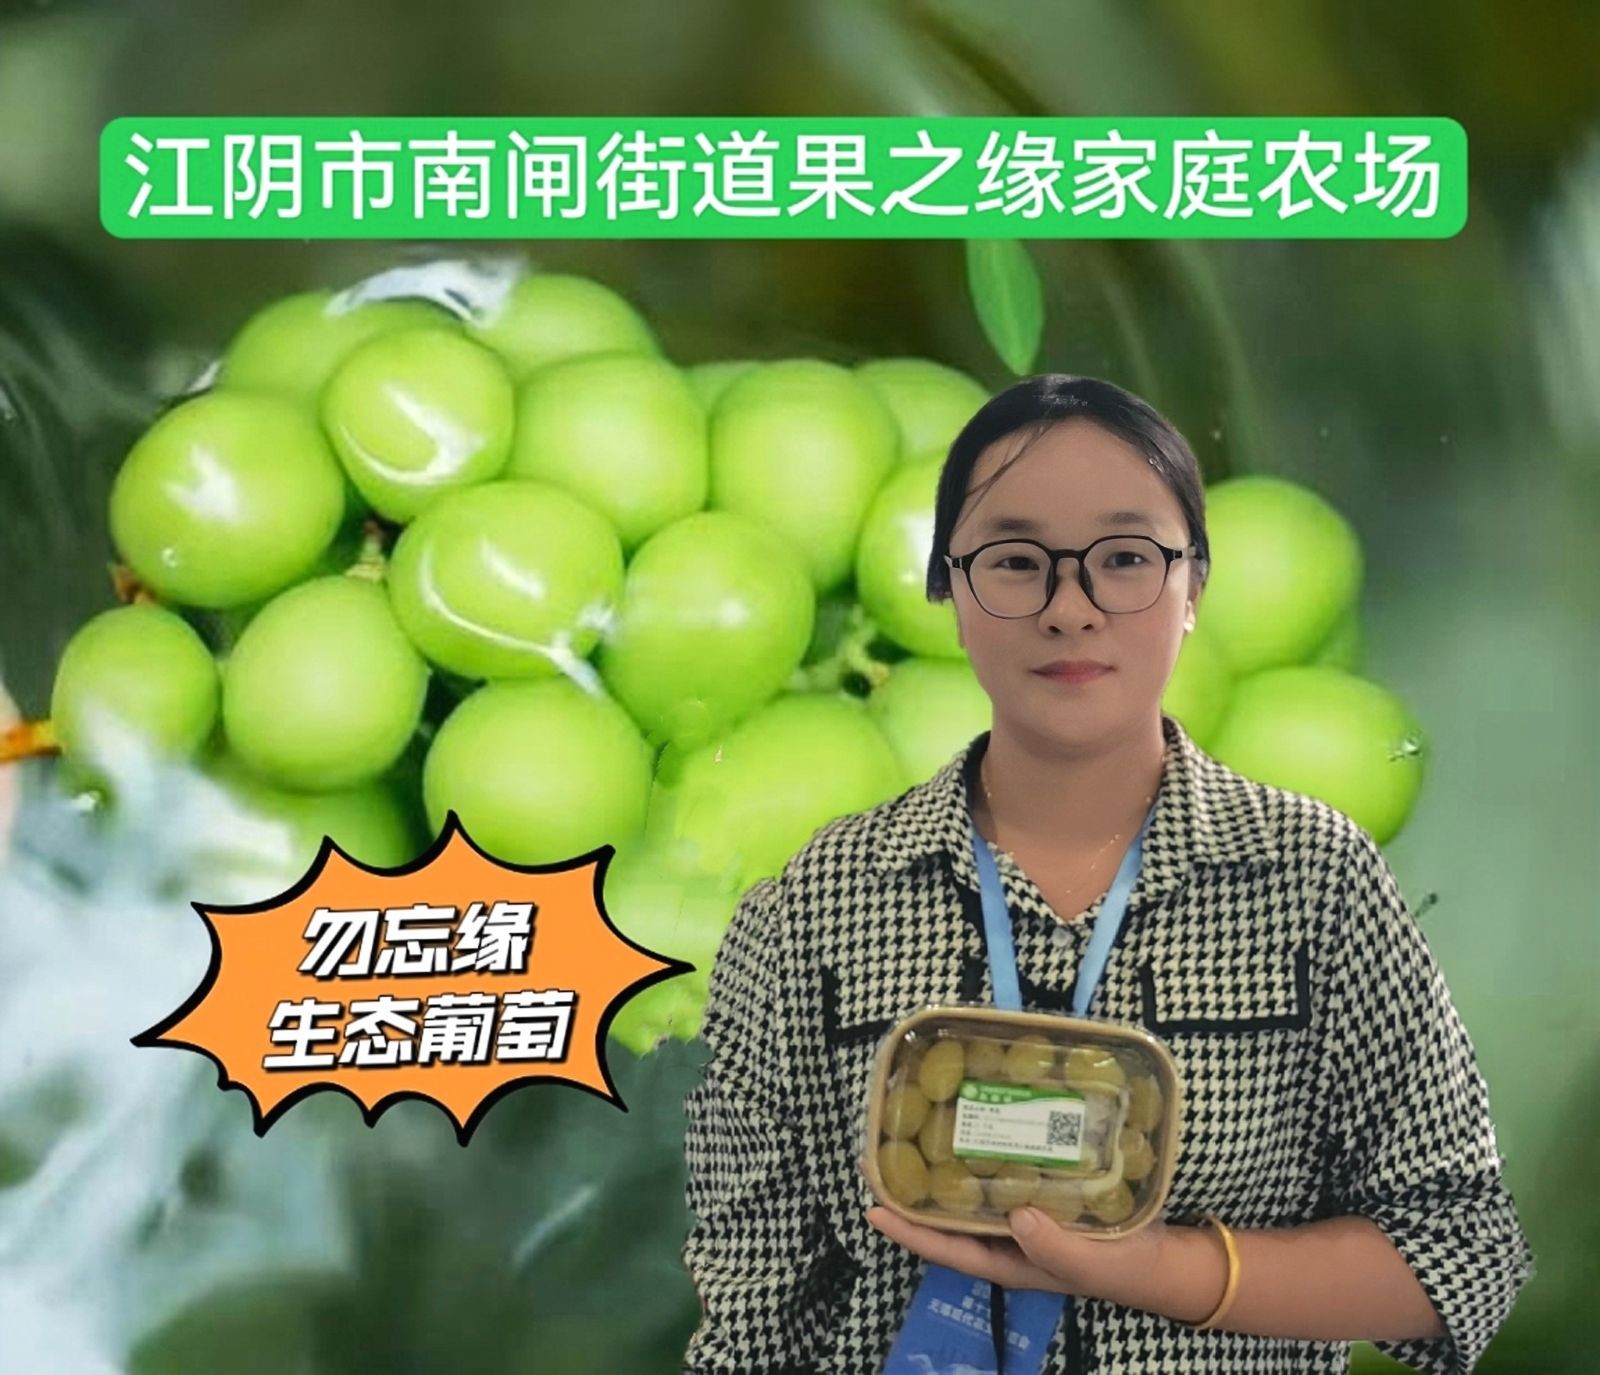 COTV全球直播-江阴市南闸街道果之缘家庭农场专业种植、摘培生态果园绿色产品-生态葡萄等新鲜水果产品，欢迎大家光临！